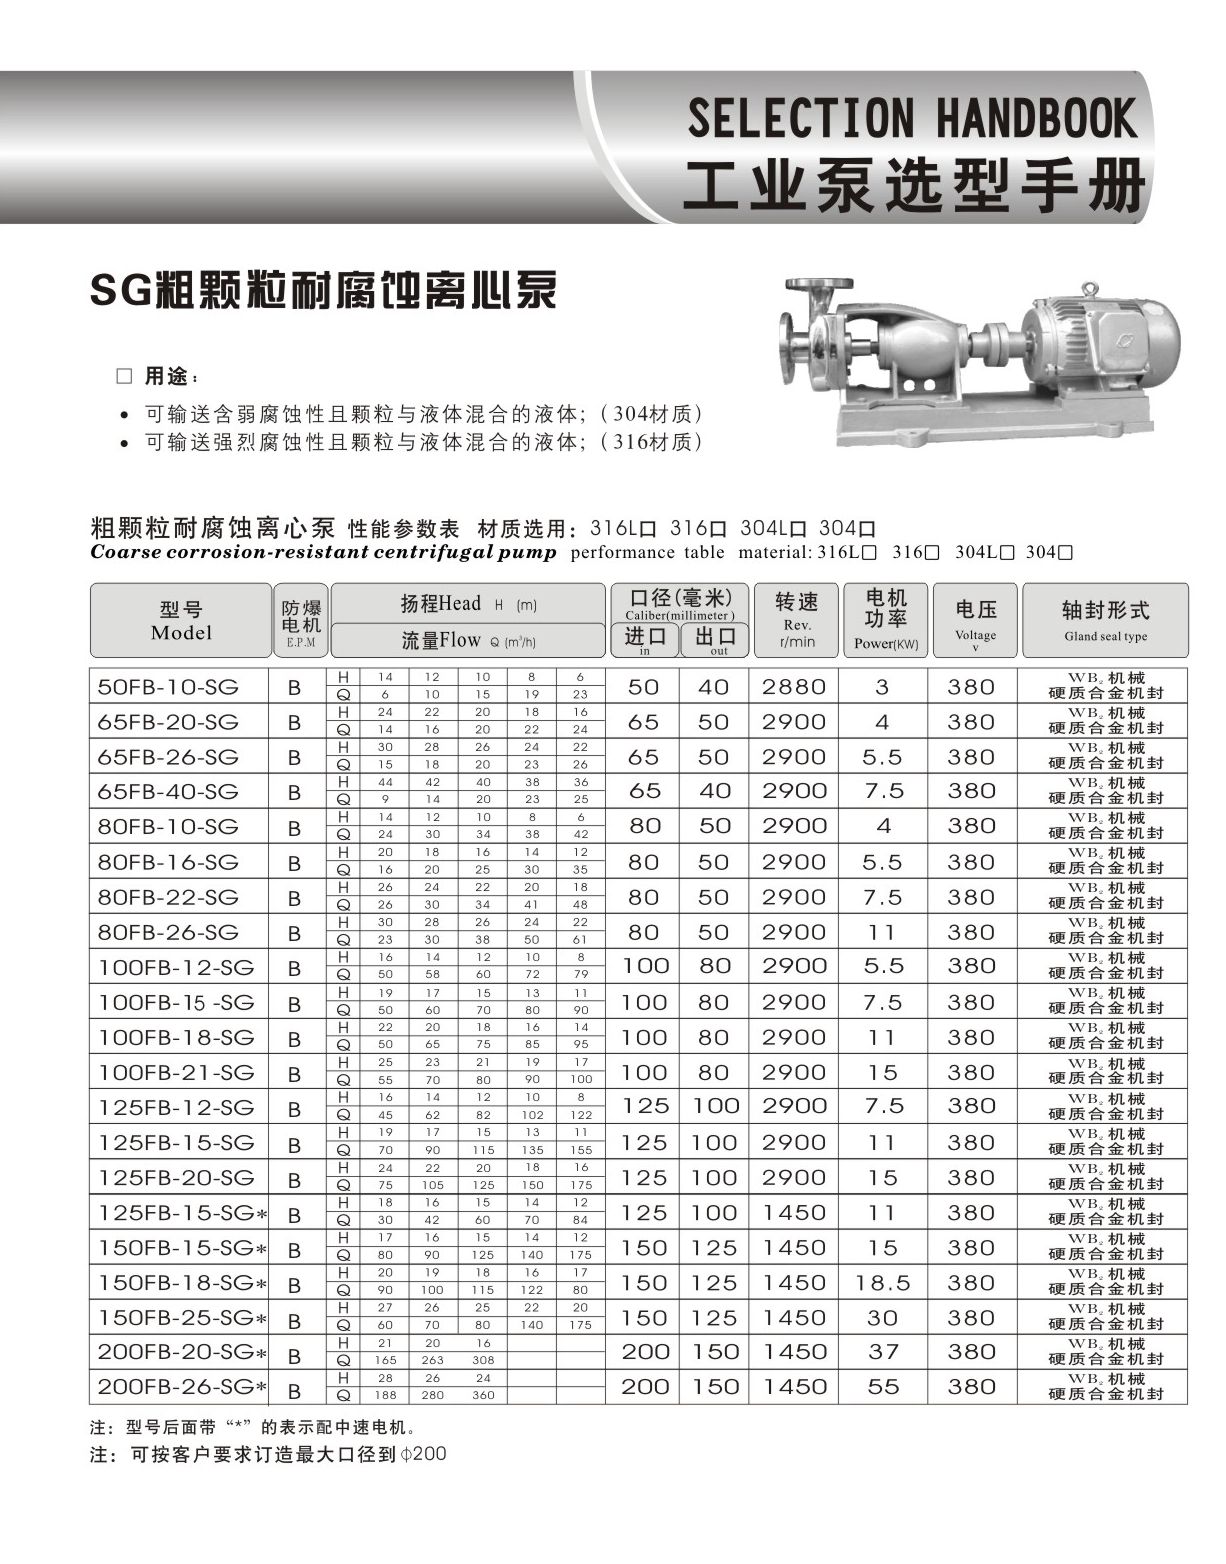 羊城水泵|80FB-16-SG|粗颗粒耐腐蚀离心泵|羊城泵业